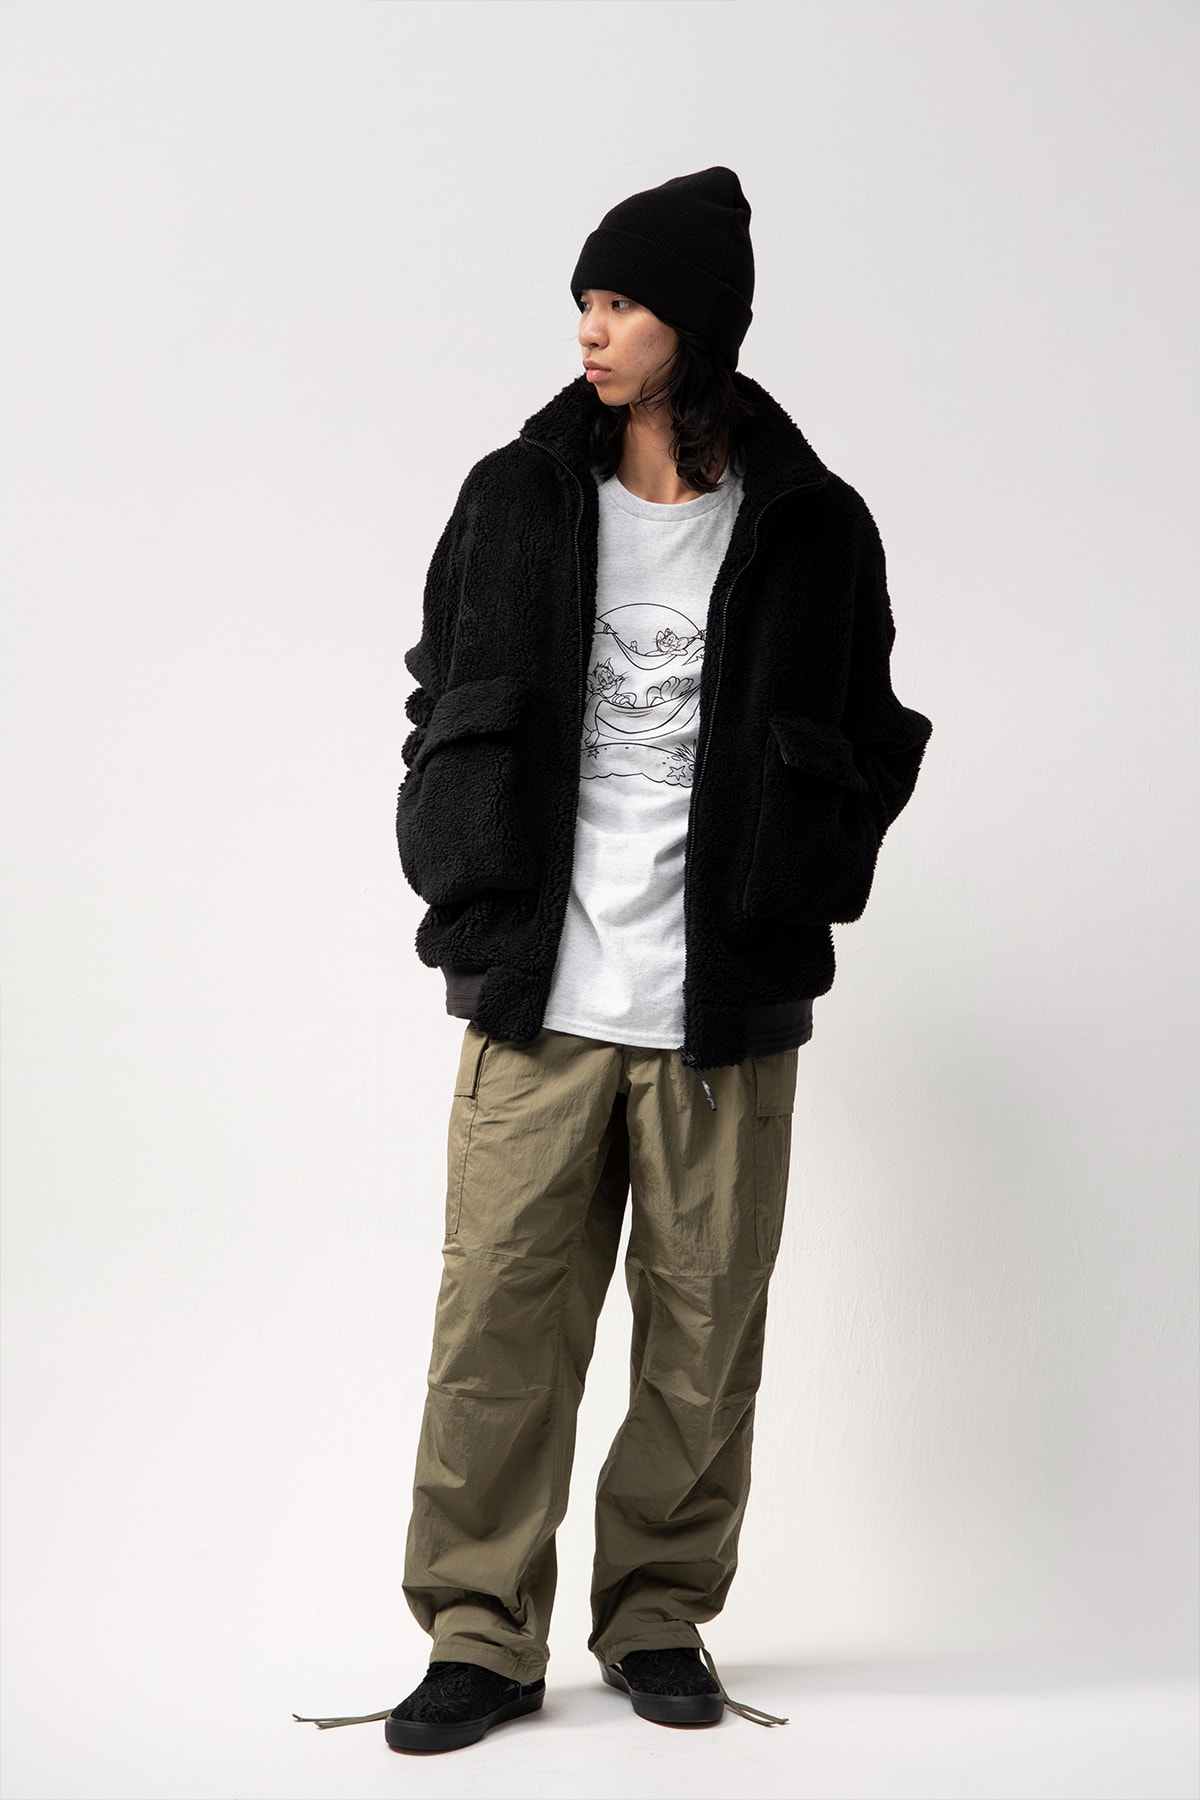 DELUXE Fall Winter 2022 Flowers II Lookbook tokyo Japan streetwear fashion '90s skate grunge 